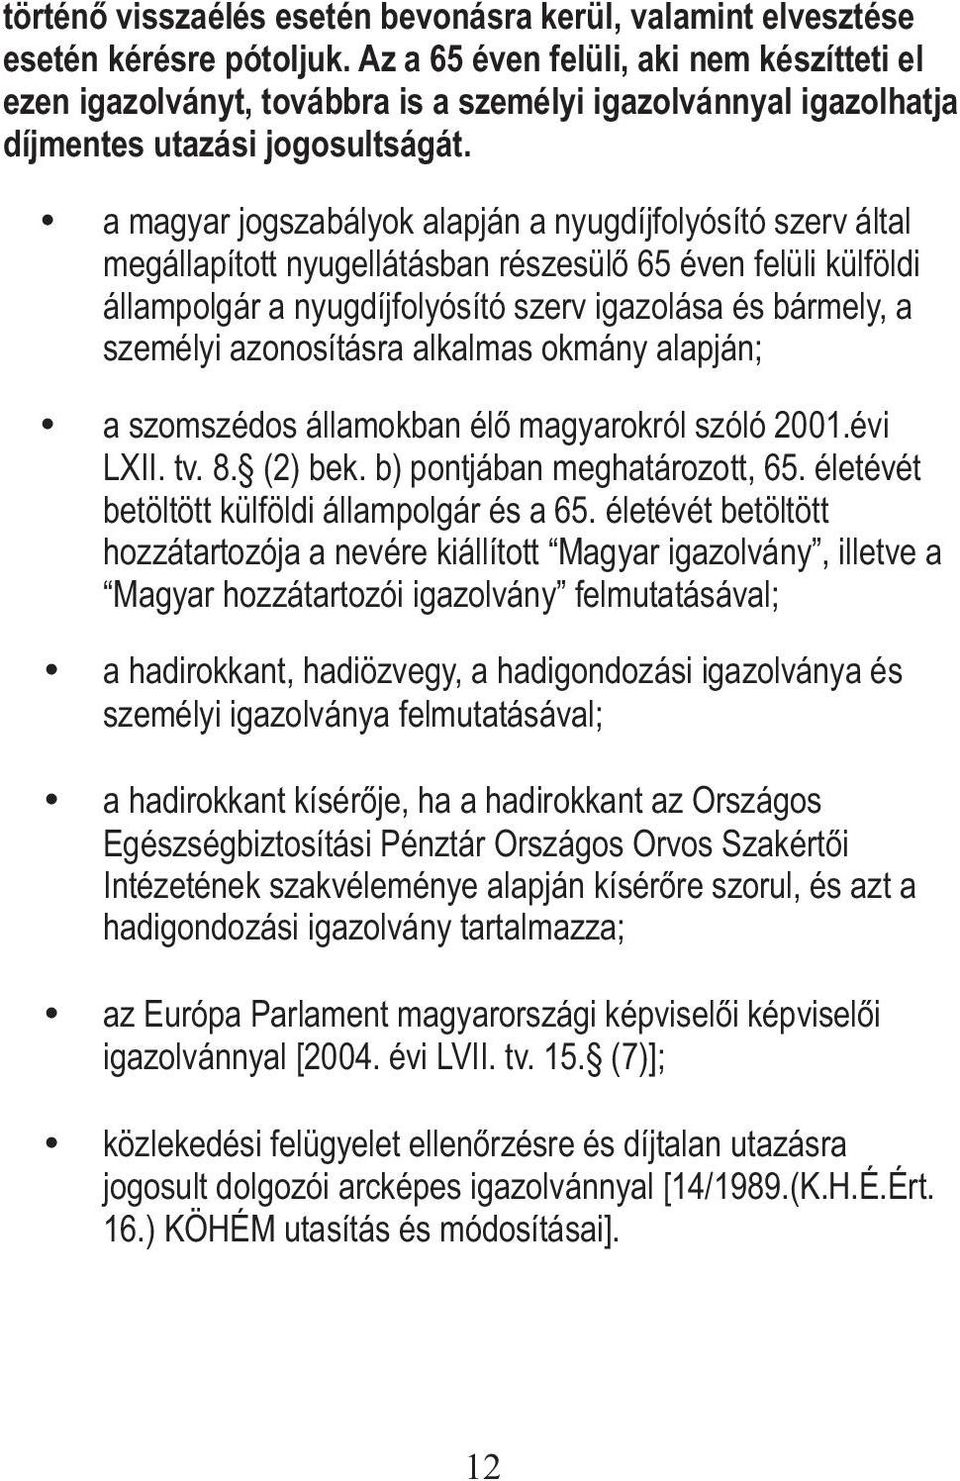 a magyar jogszabályok alapján a nyugdíjfolyósító szerv által megállapított nyugellátásban részesülő 65 éven felüli külföldi állampolgár a nyugdíjfolyósító szerv igazolása és bármely, a személyi